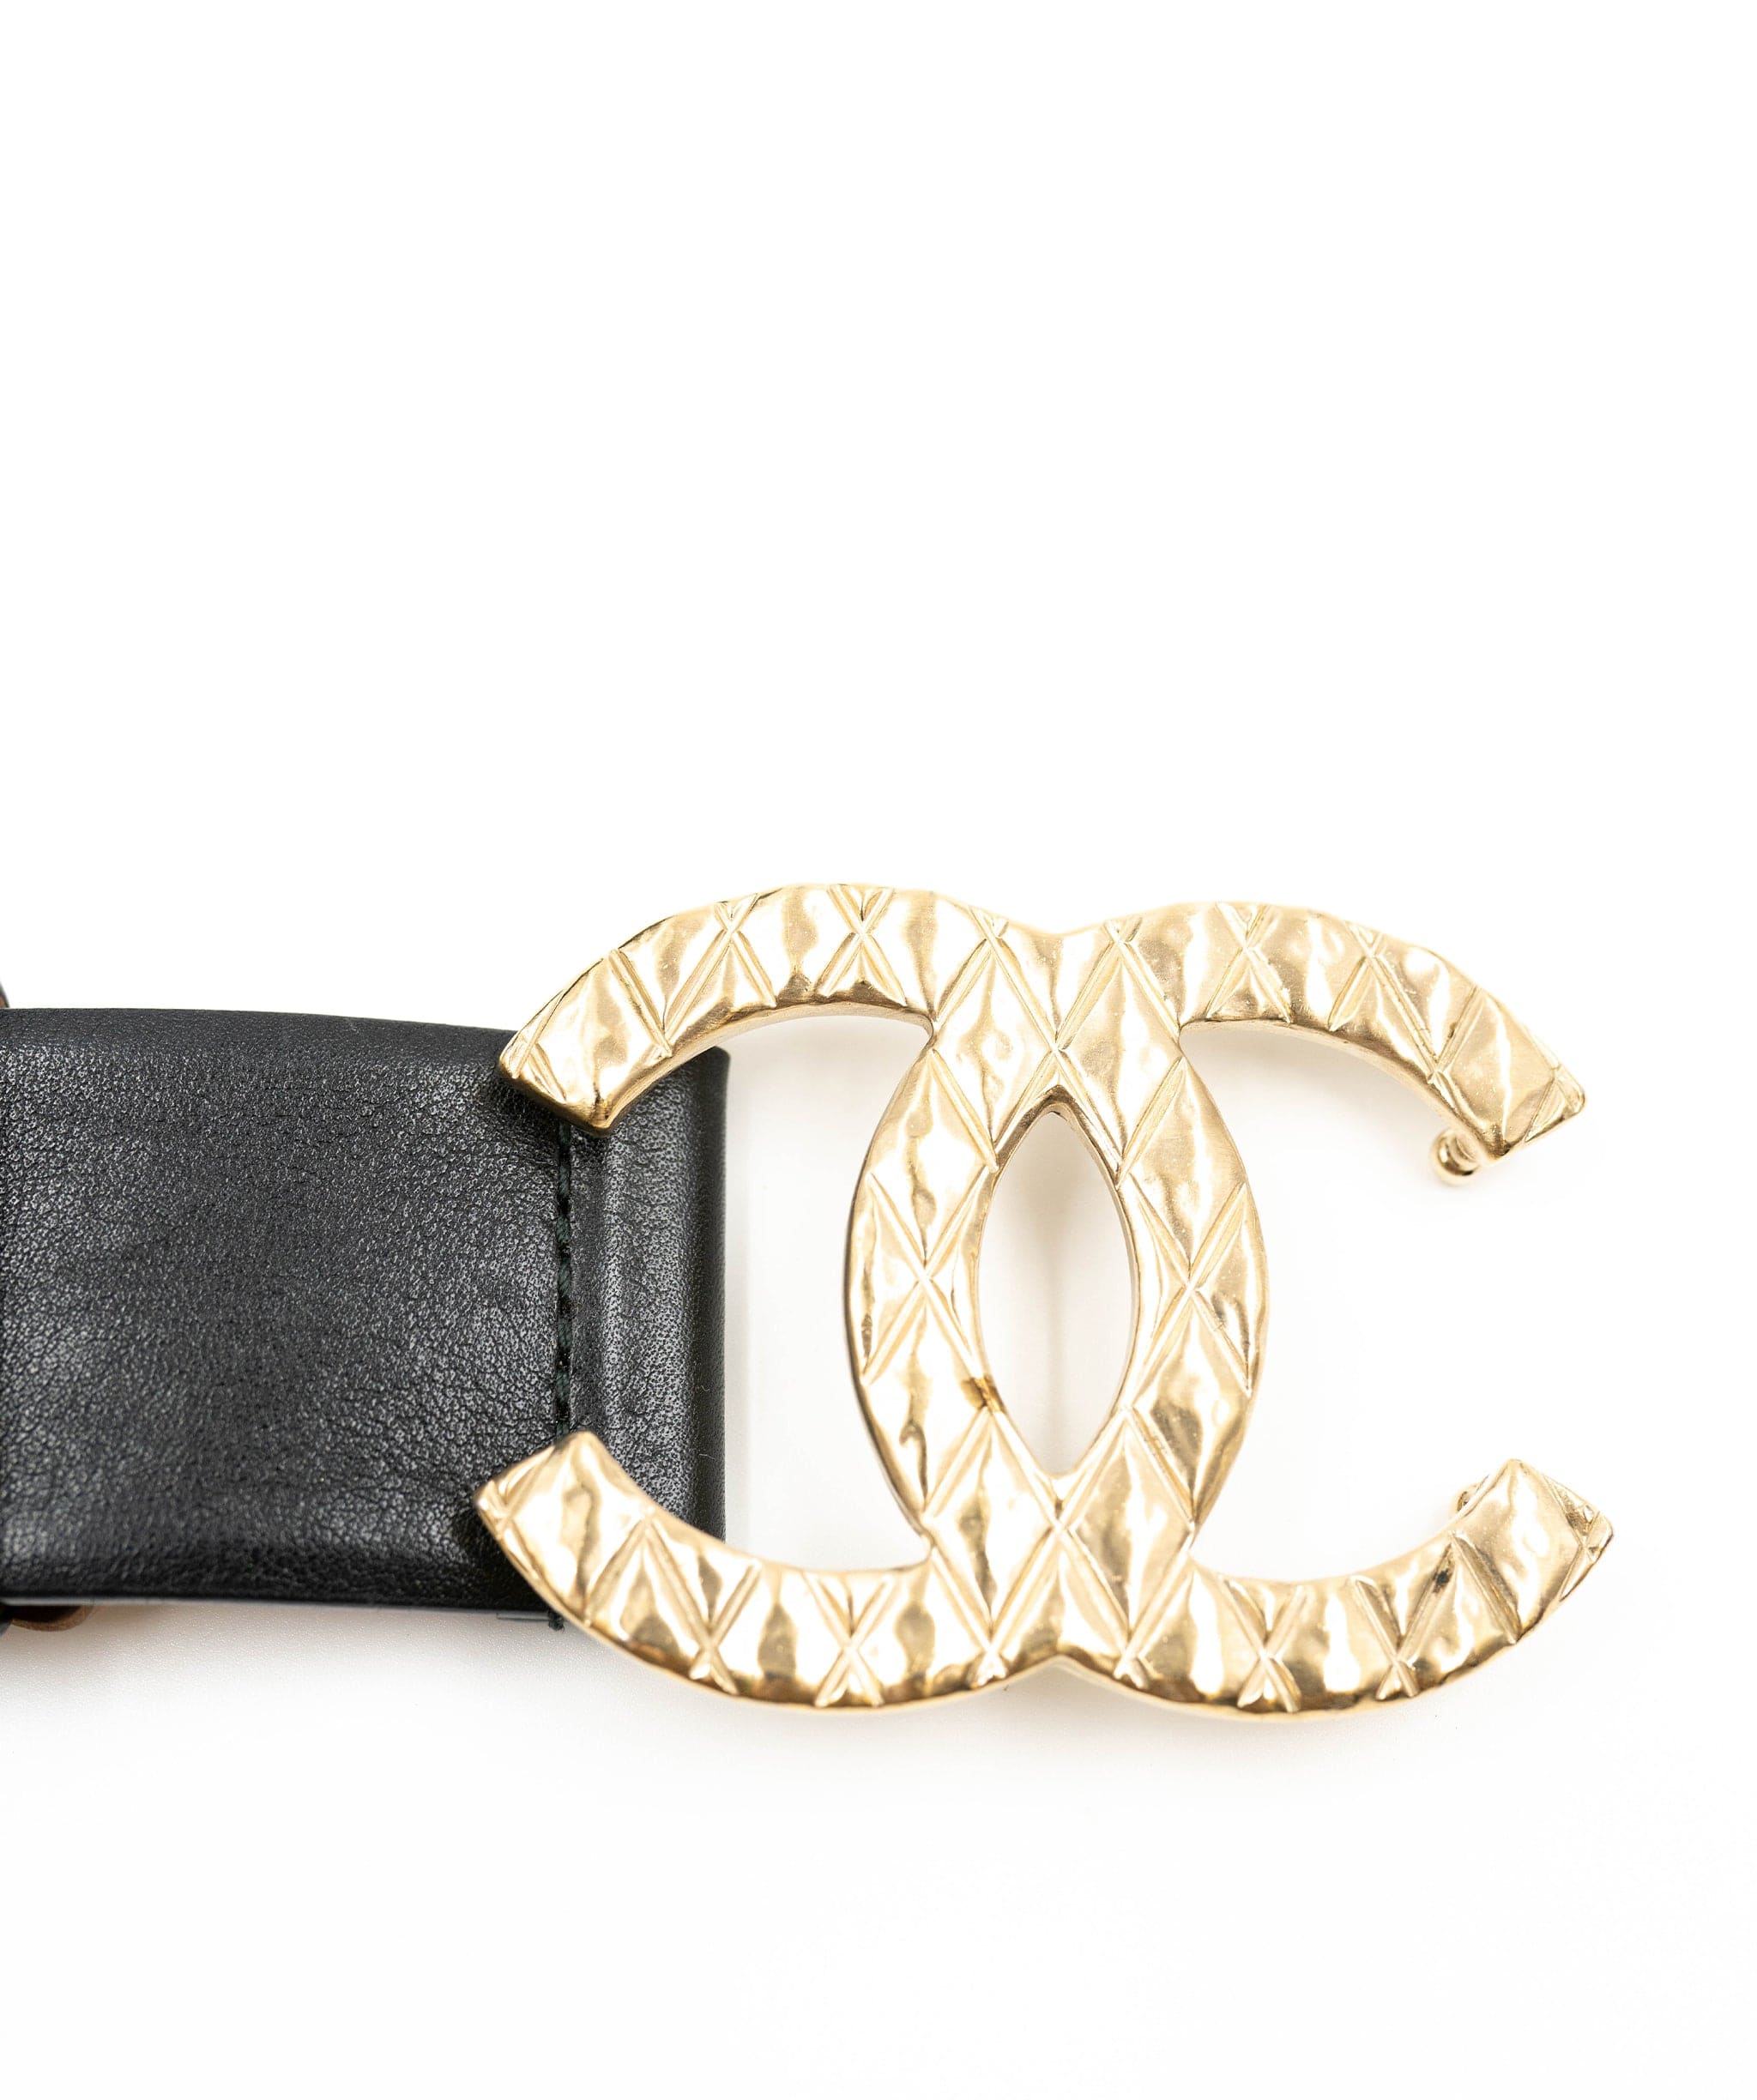 Chanel Chanel black leather belt ASL3376